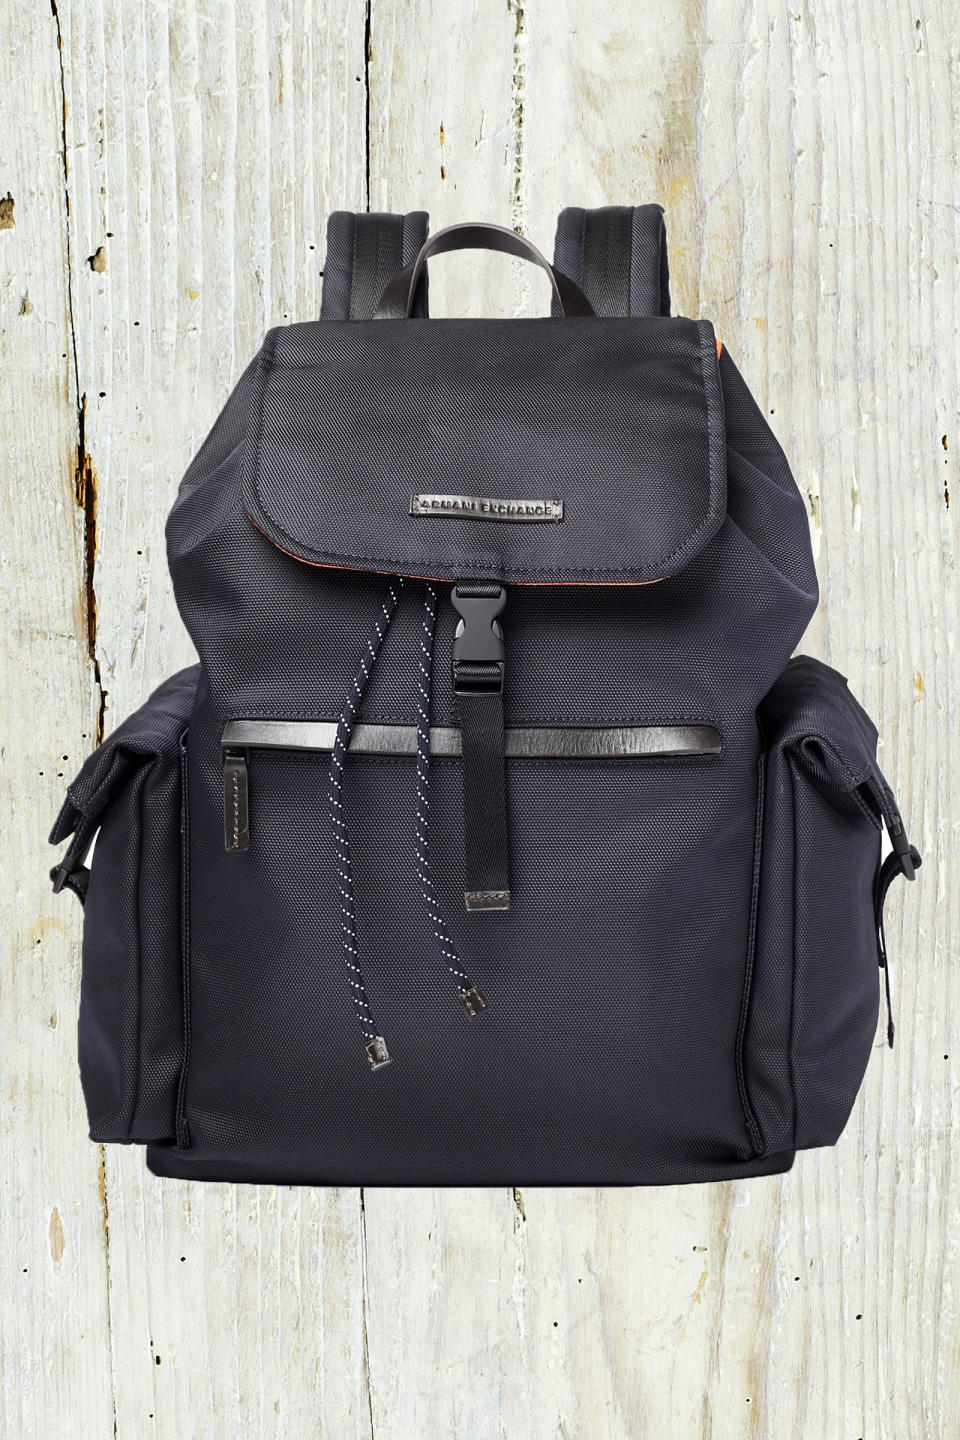 2) Backpack